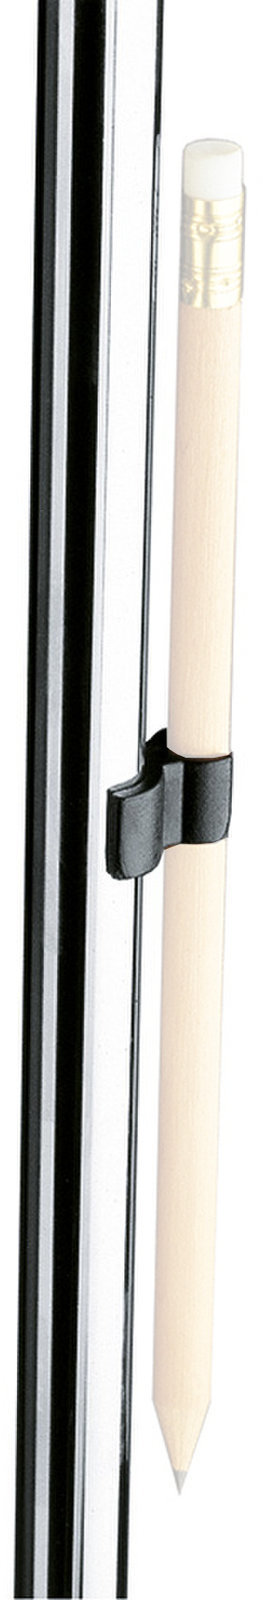 Ständer für PC Konig & Meyer Pencil Holder Black